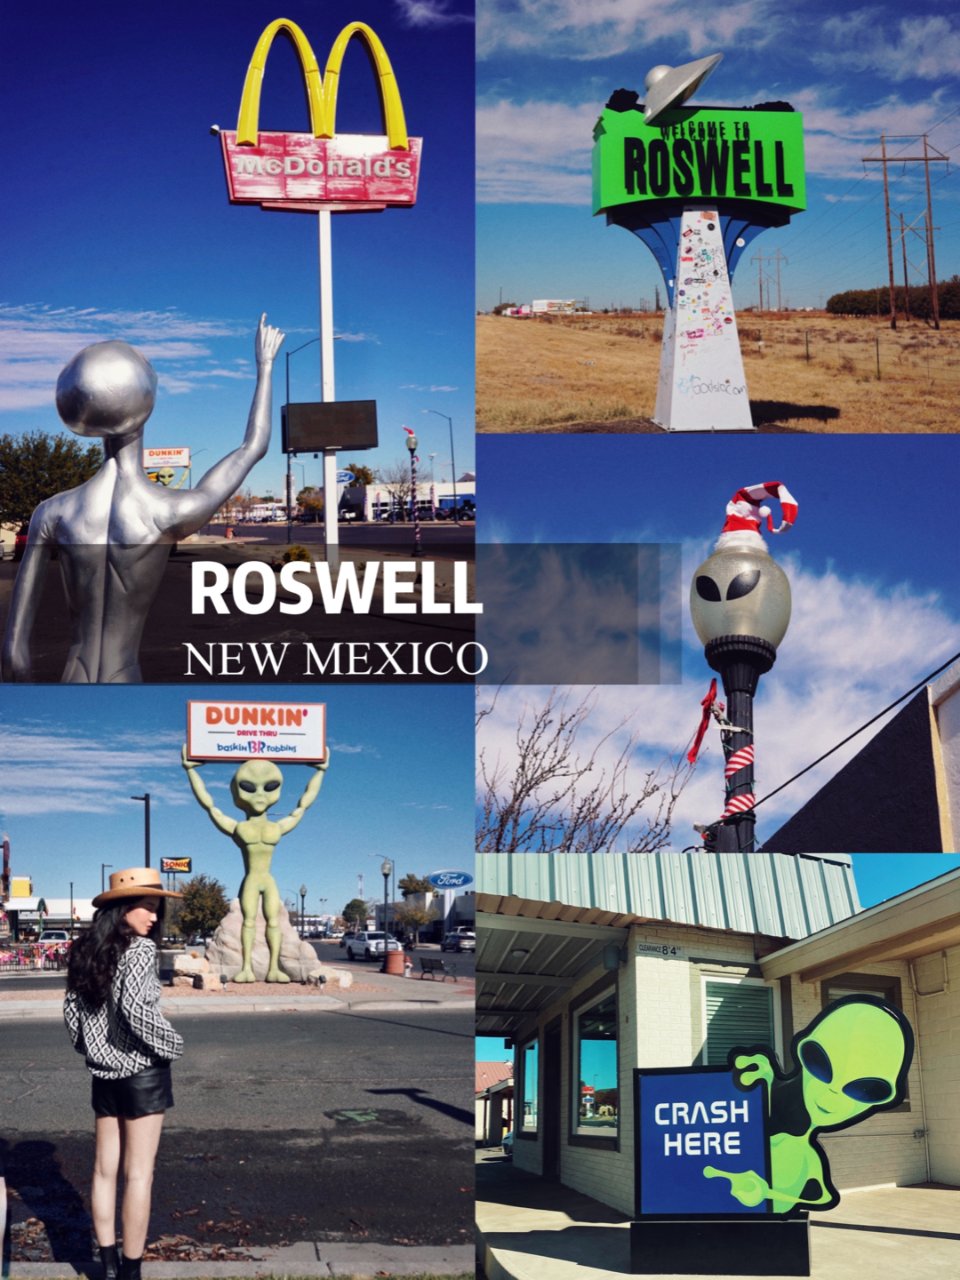 来新墨西哥州绝对不可错过的外星人小镇👽...